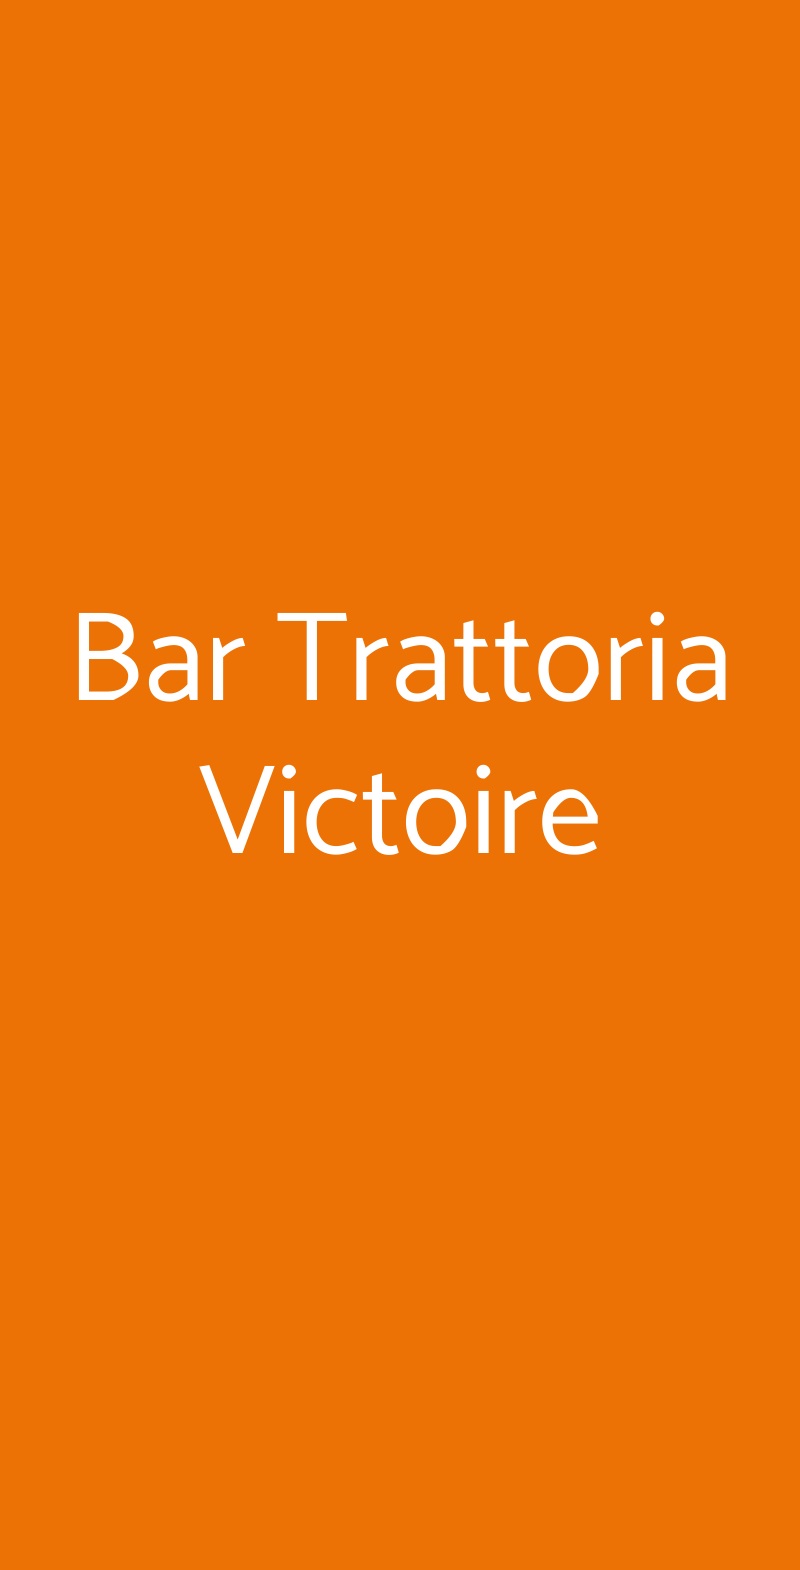 Bar Trattoria Victoire Milano menù 1 pagina